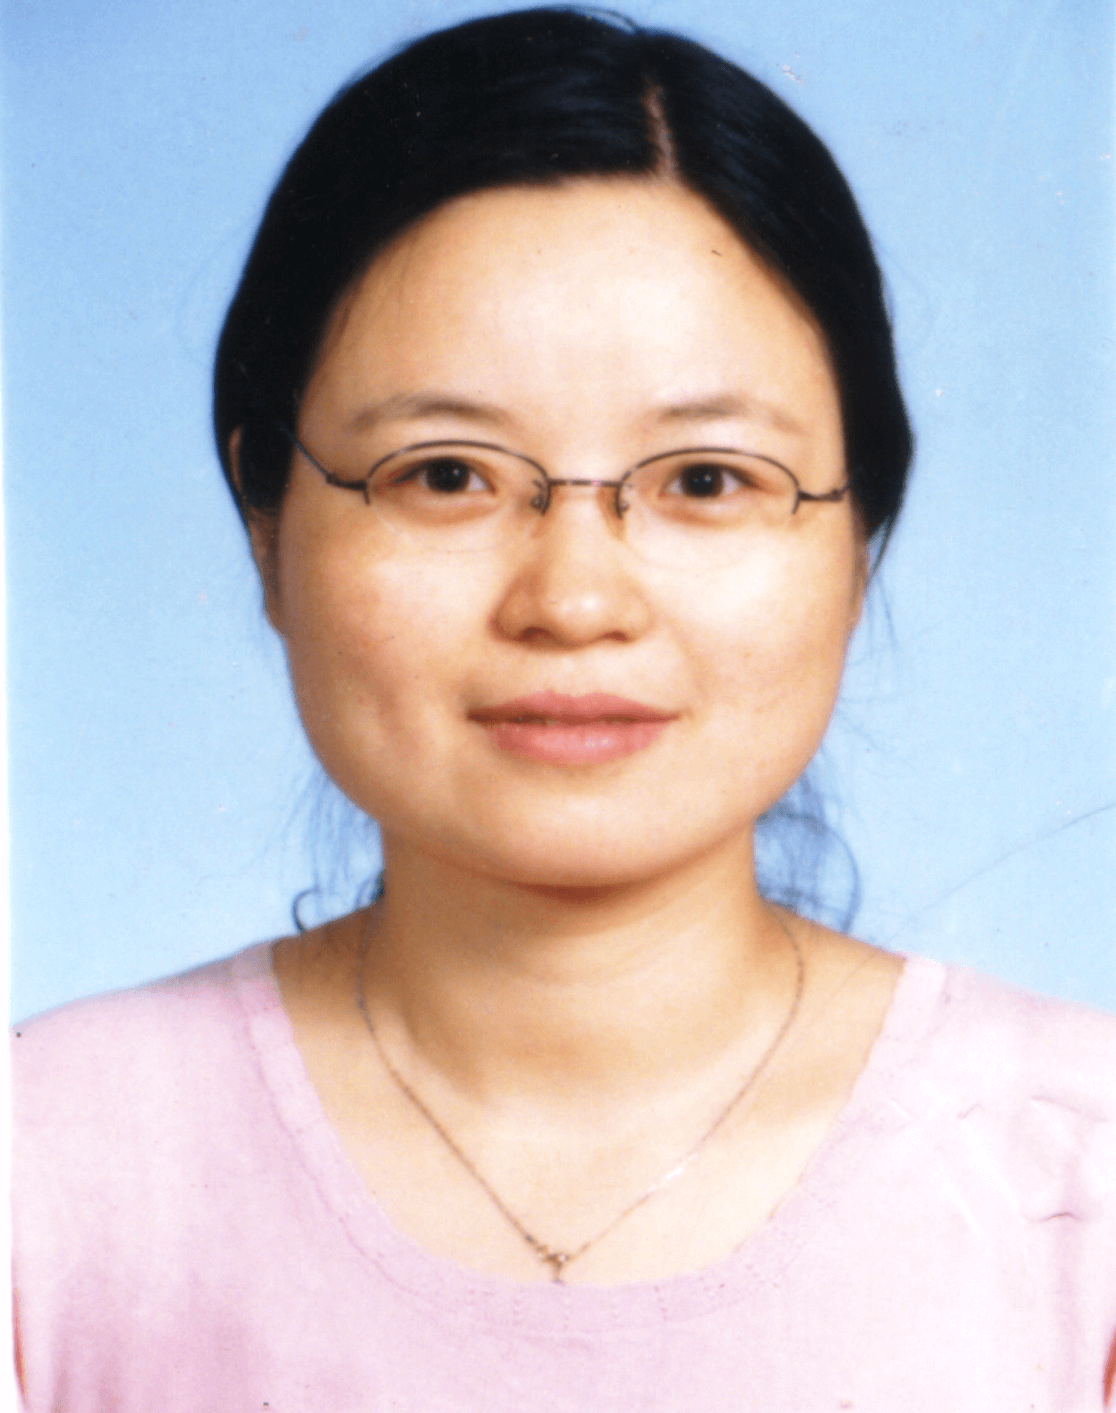 Dr. Zhu Xueping